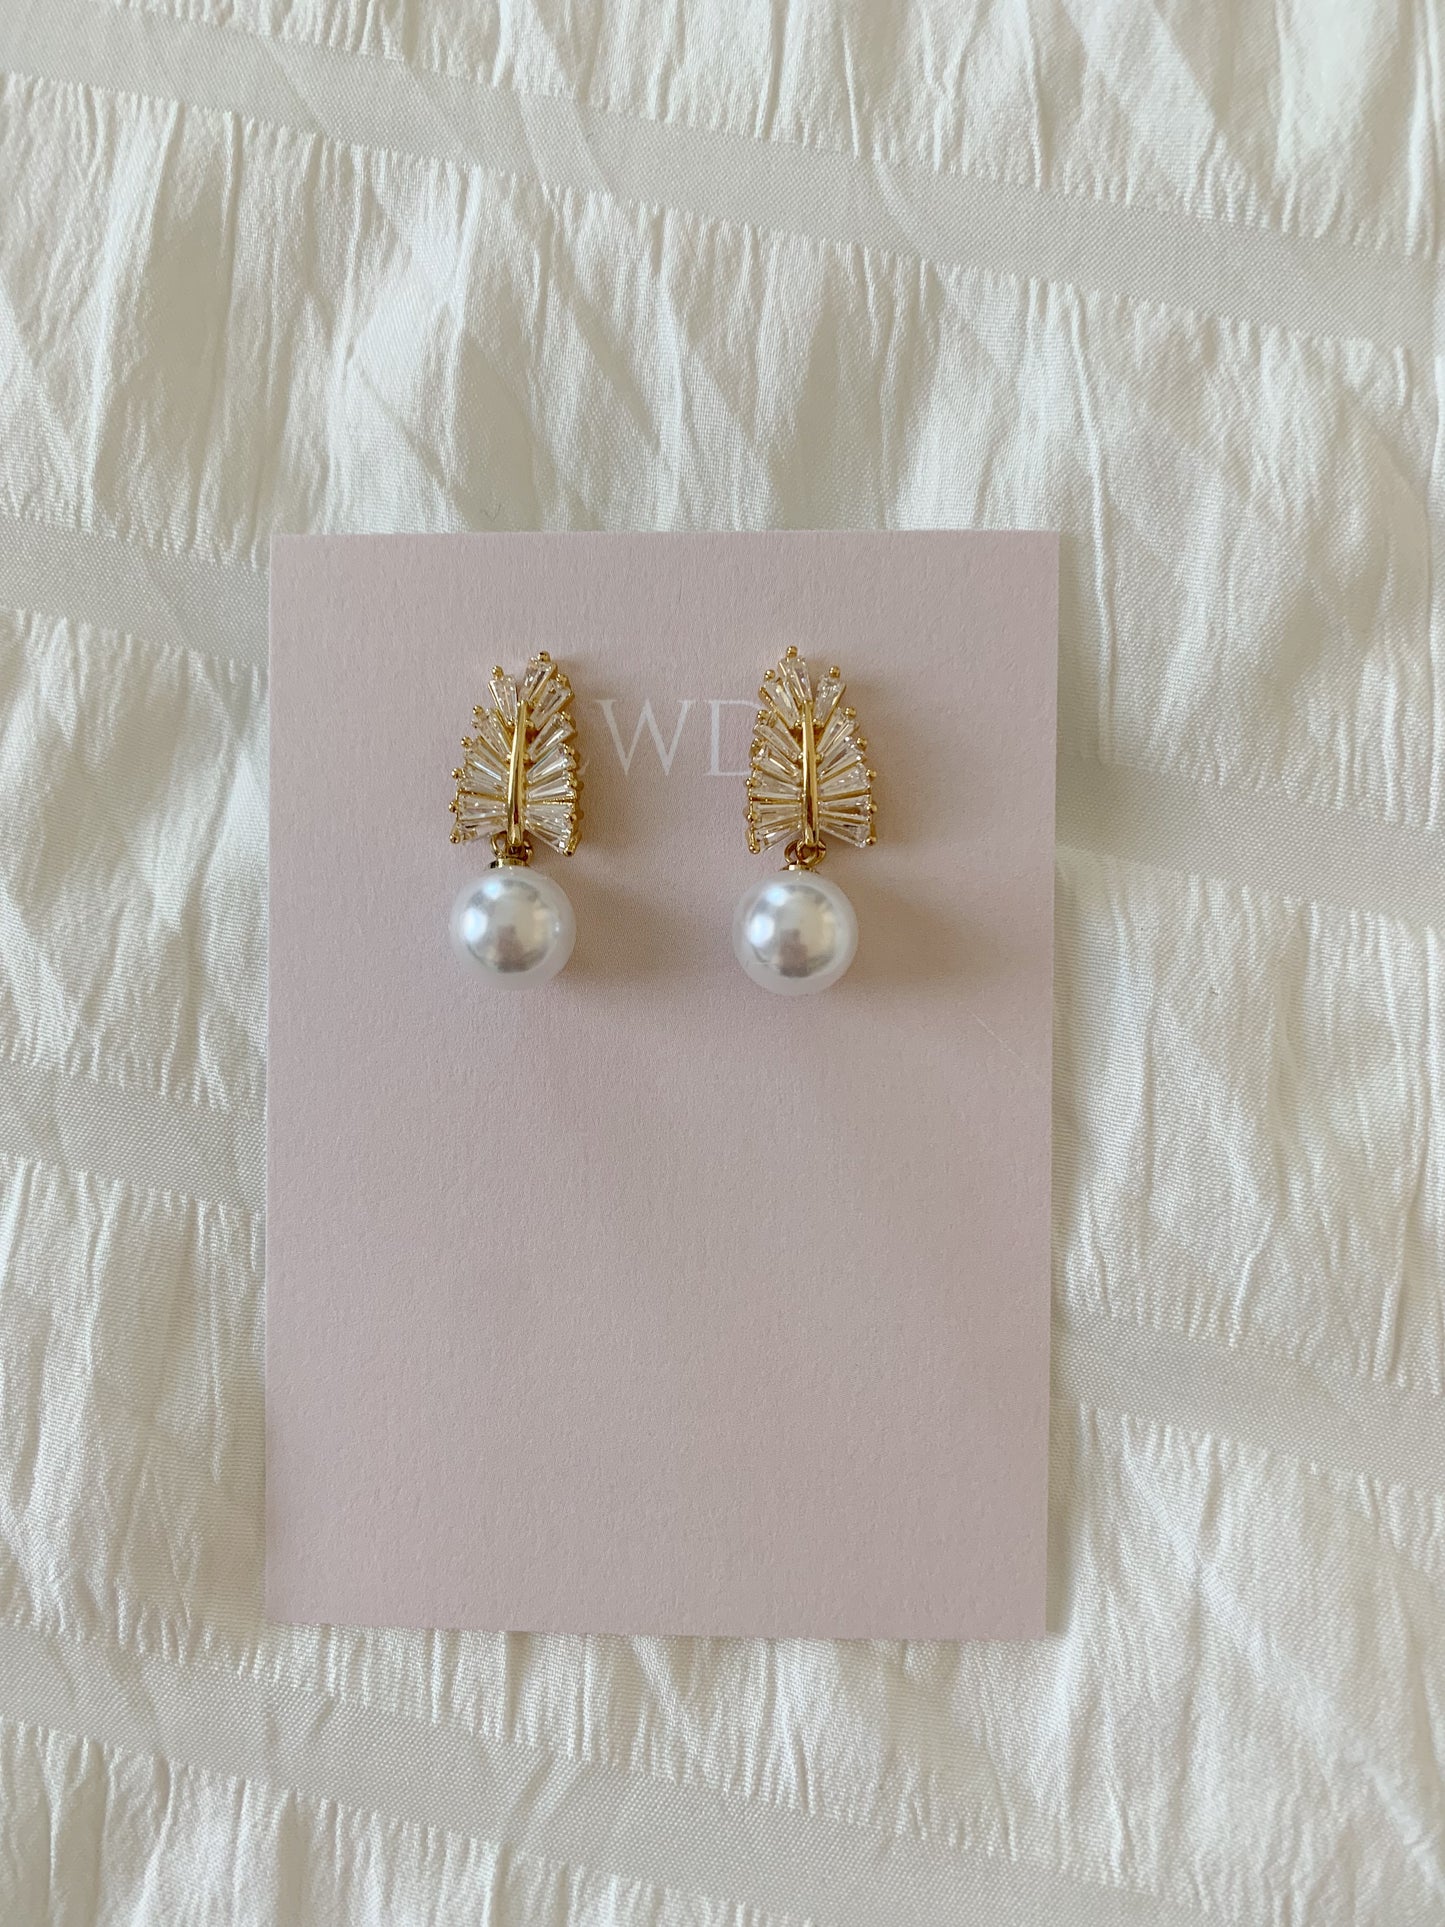 Leaf Earrings with Pearl Drop